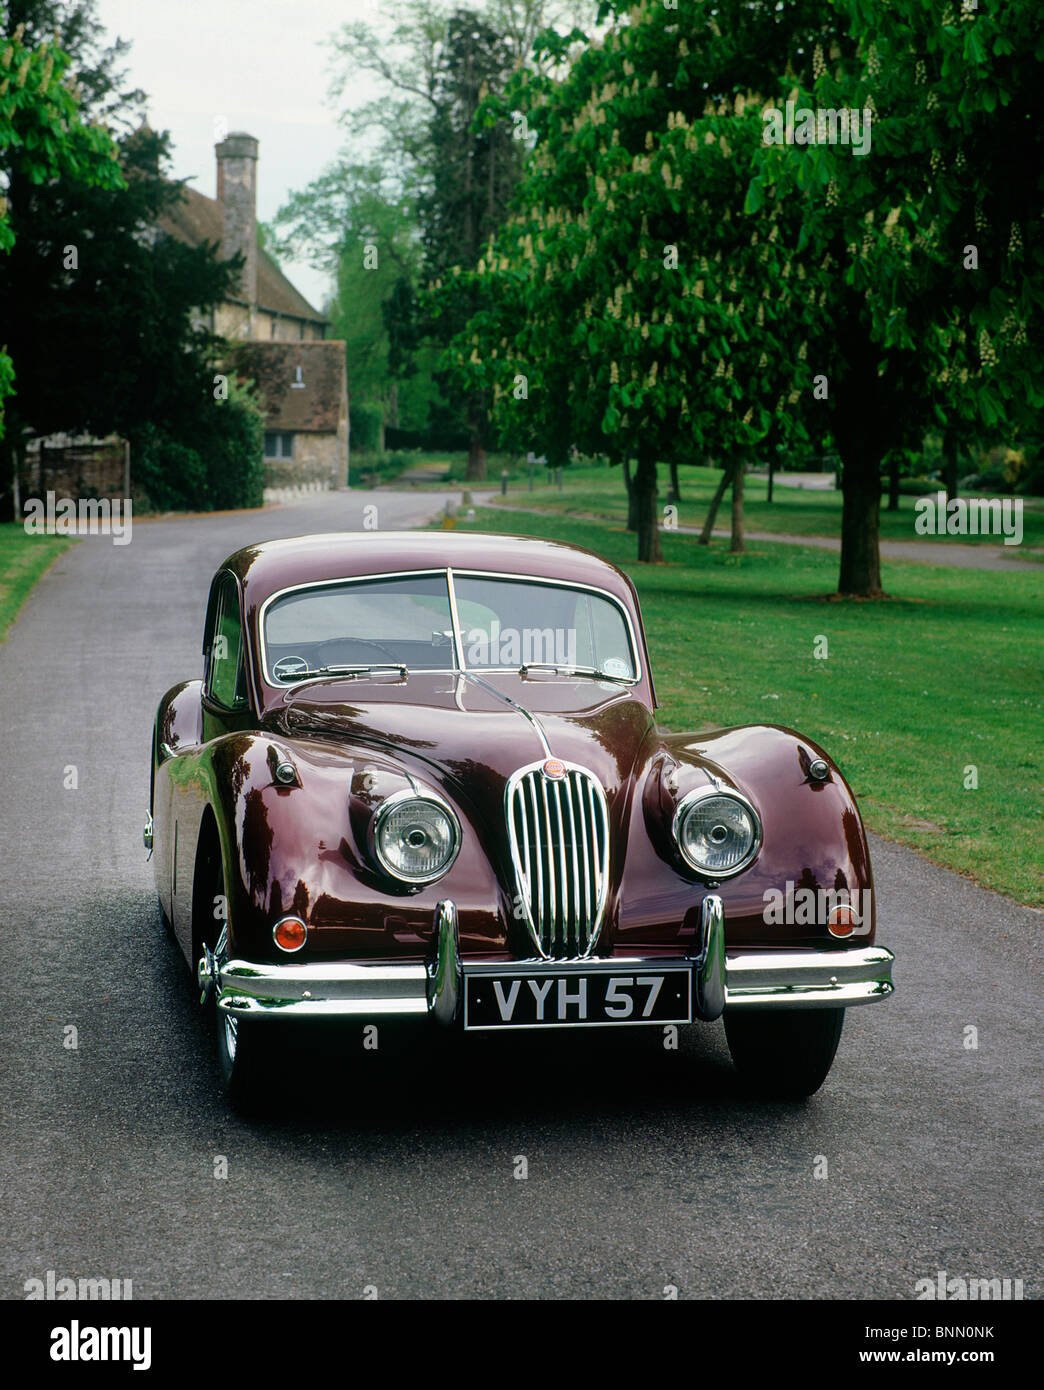 1957 Jaguar XK 140 Stock Photo